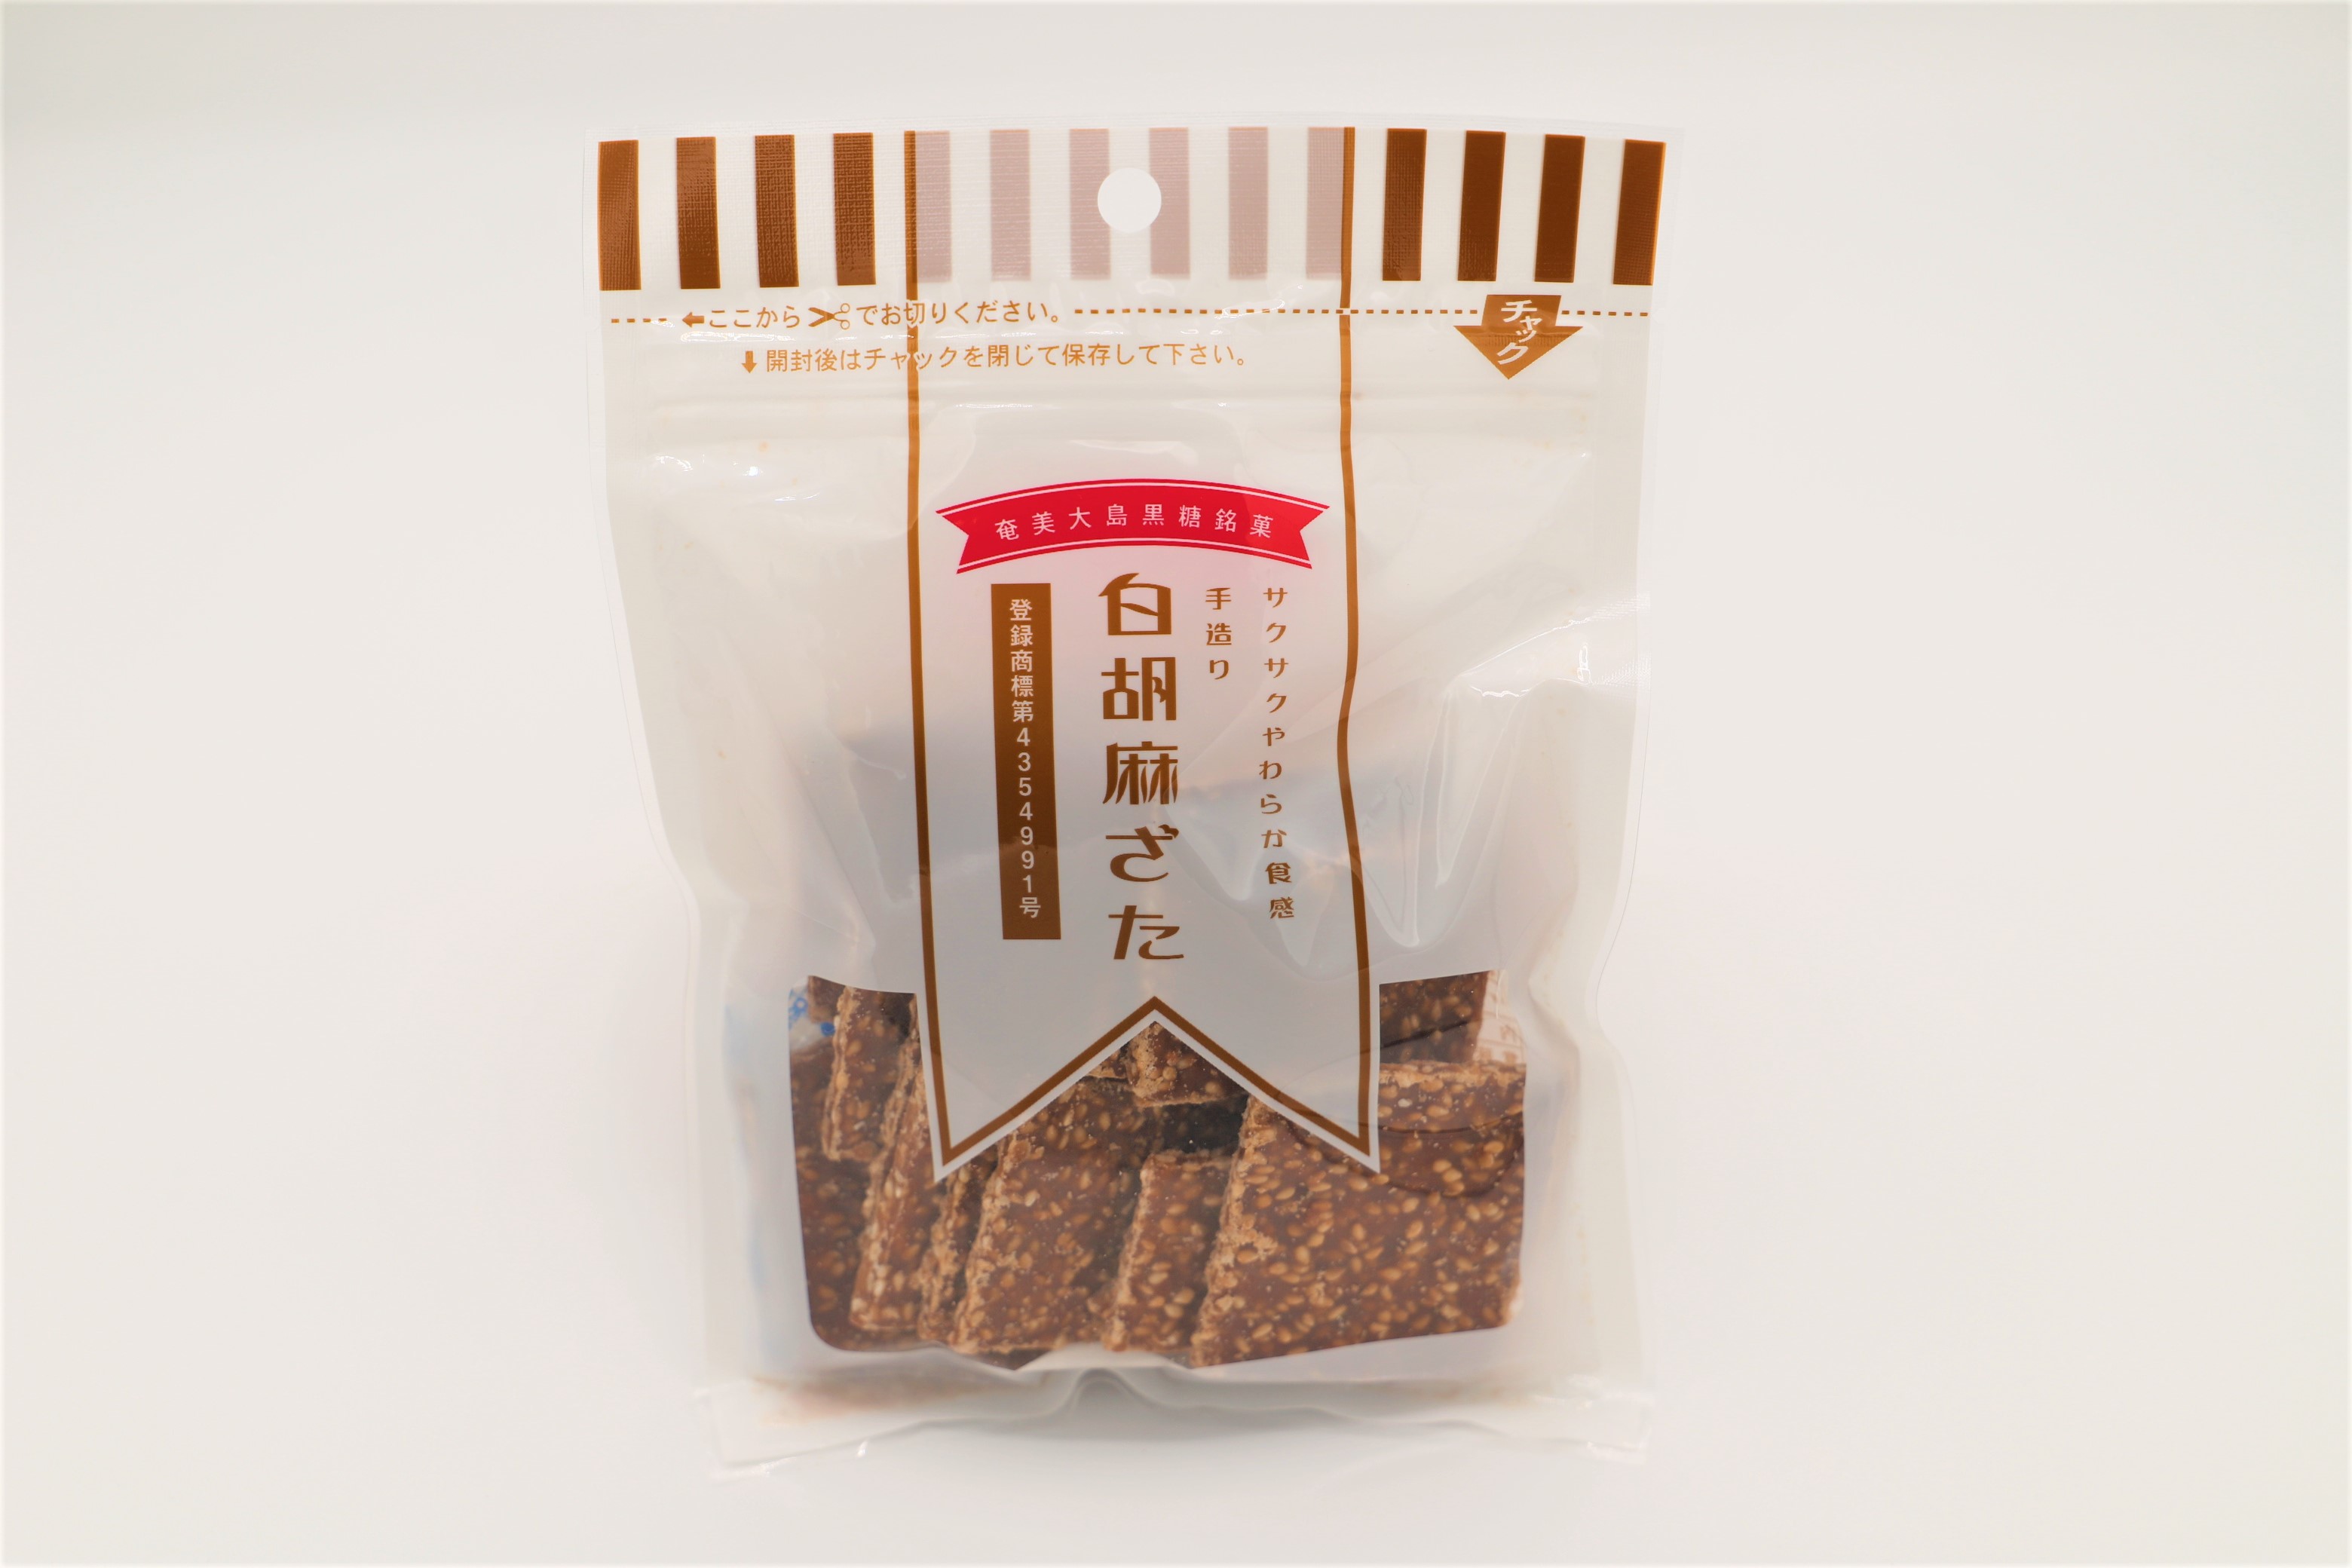  кунжут кондитерские изделия Amami Ooshima 120g×70 пакет белый кунжут ... еда кондитерские изделия сладости диета закуска коричневый сахар подарок резина ... лен Amami ... мускатный сахар много . земля производство .. подарок 